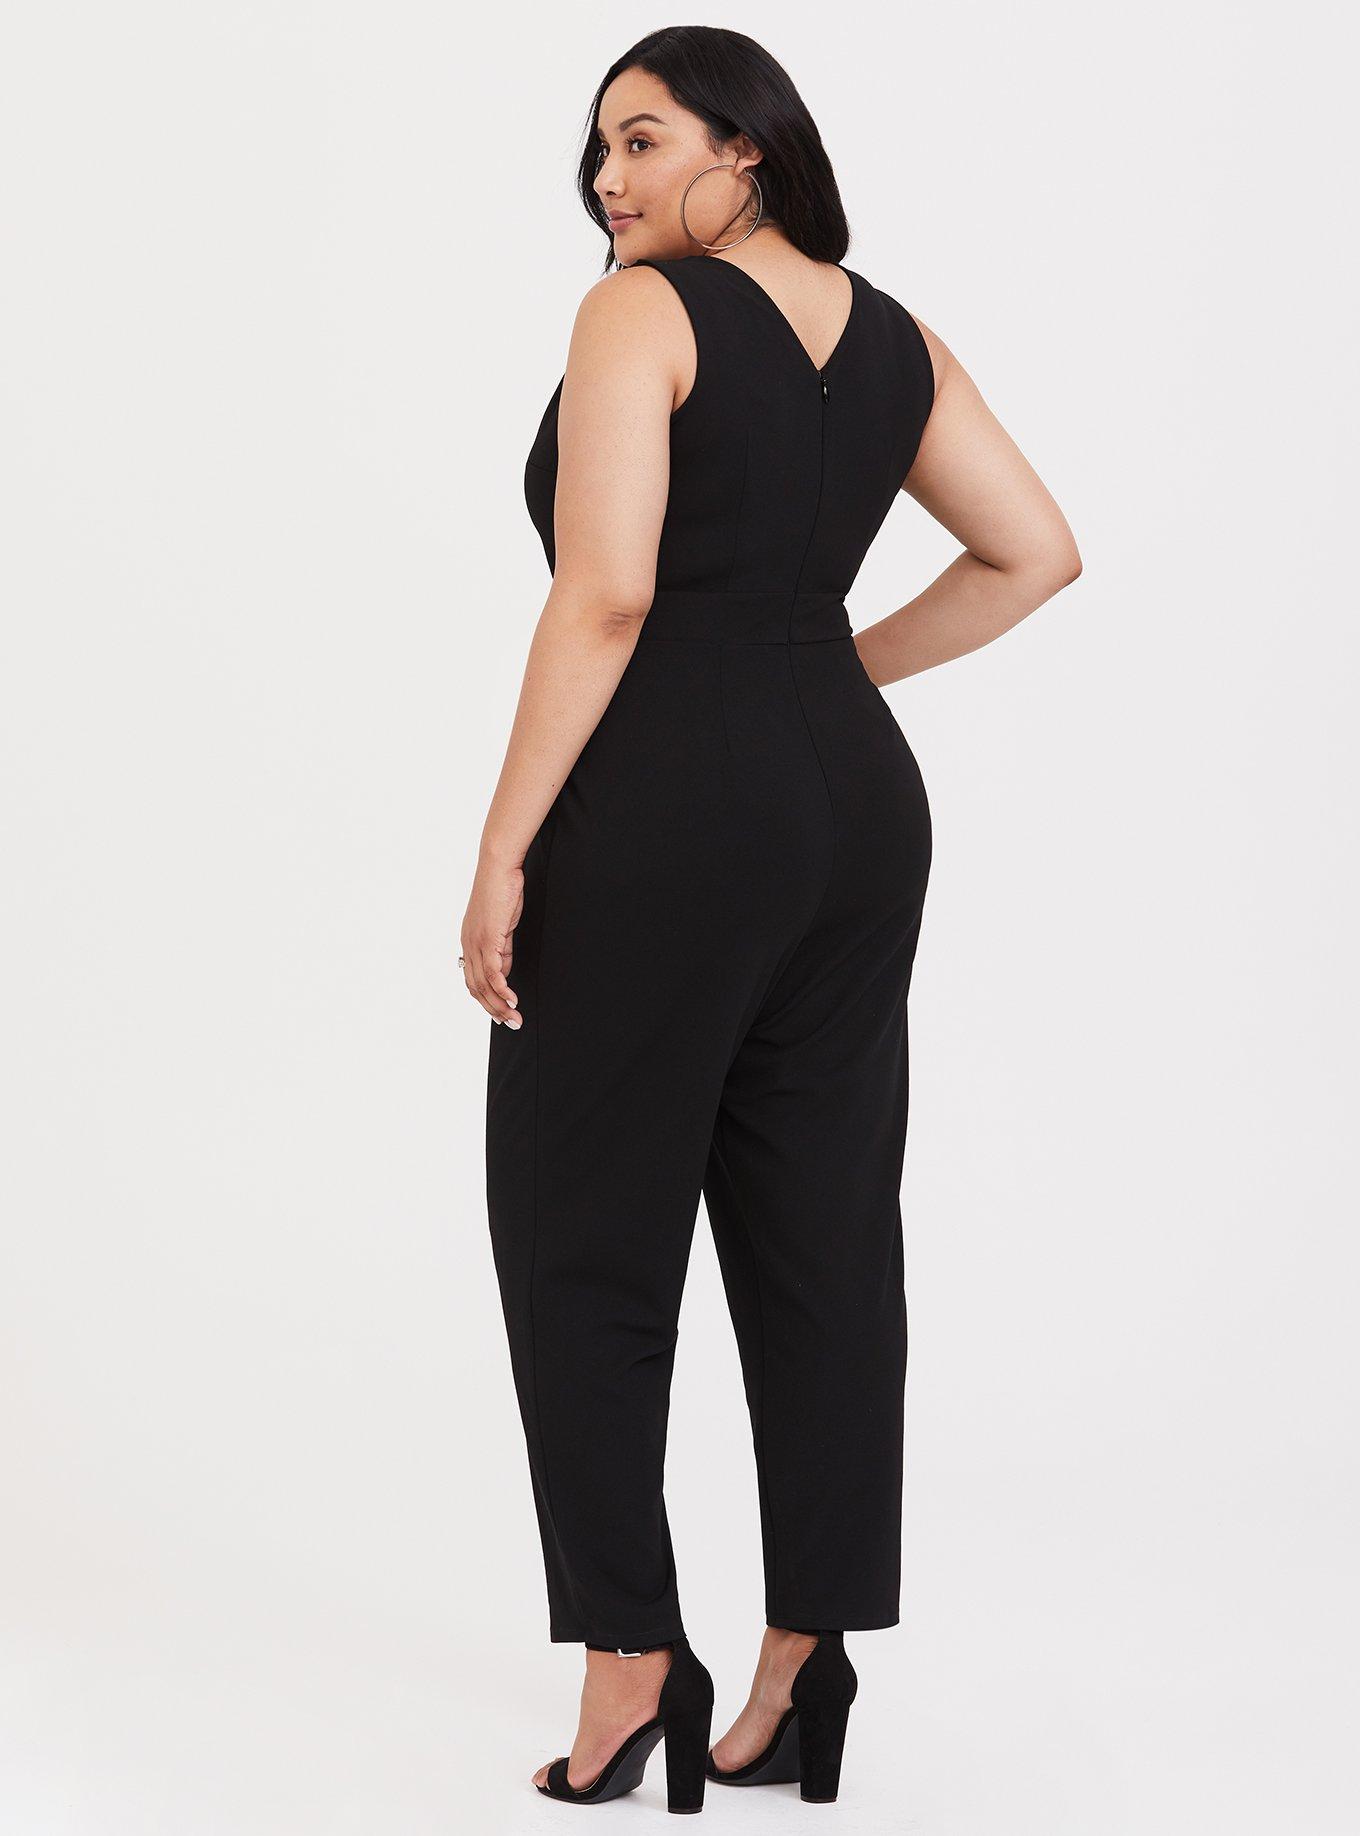 Plus Size - Black Sleeveless Jumpsuit - Torrid